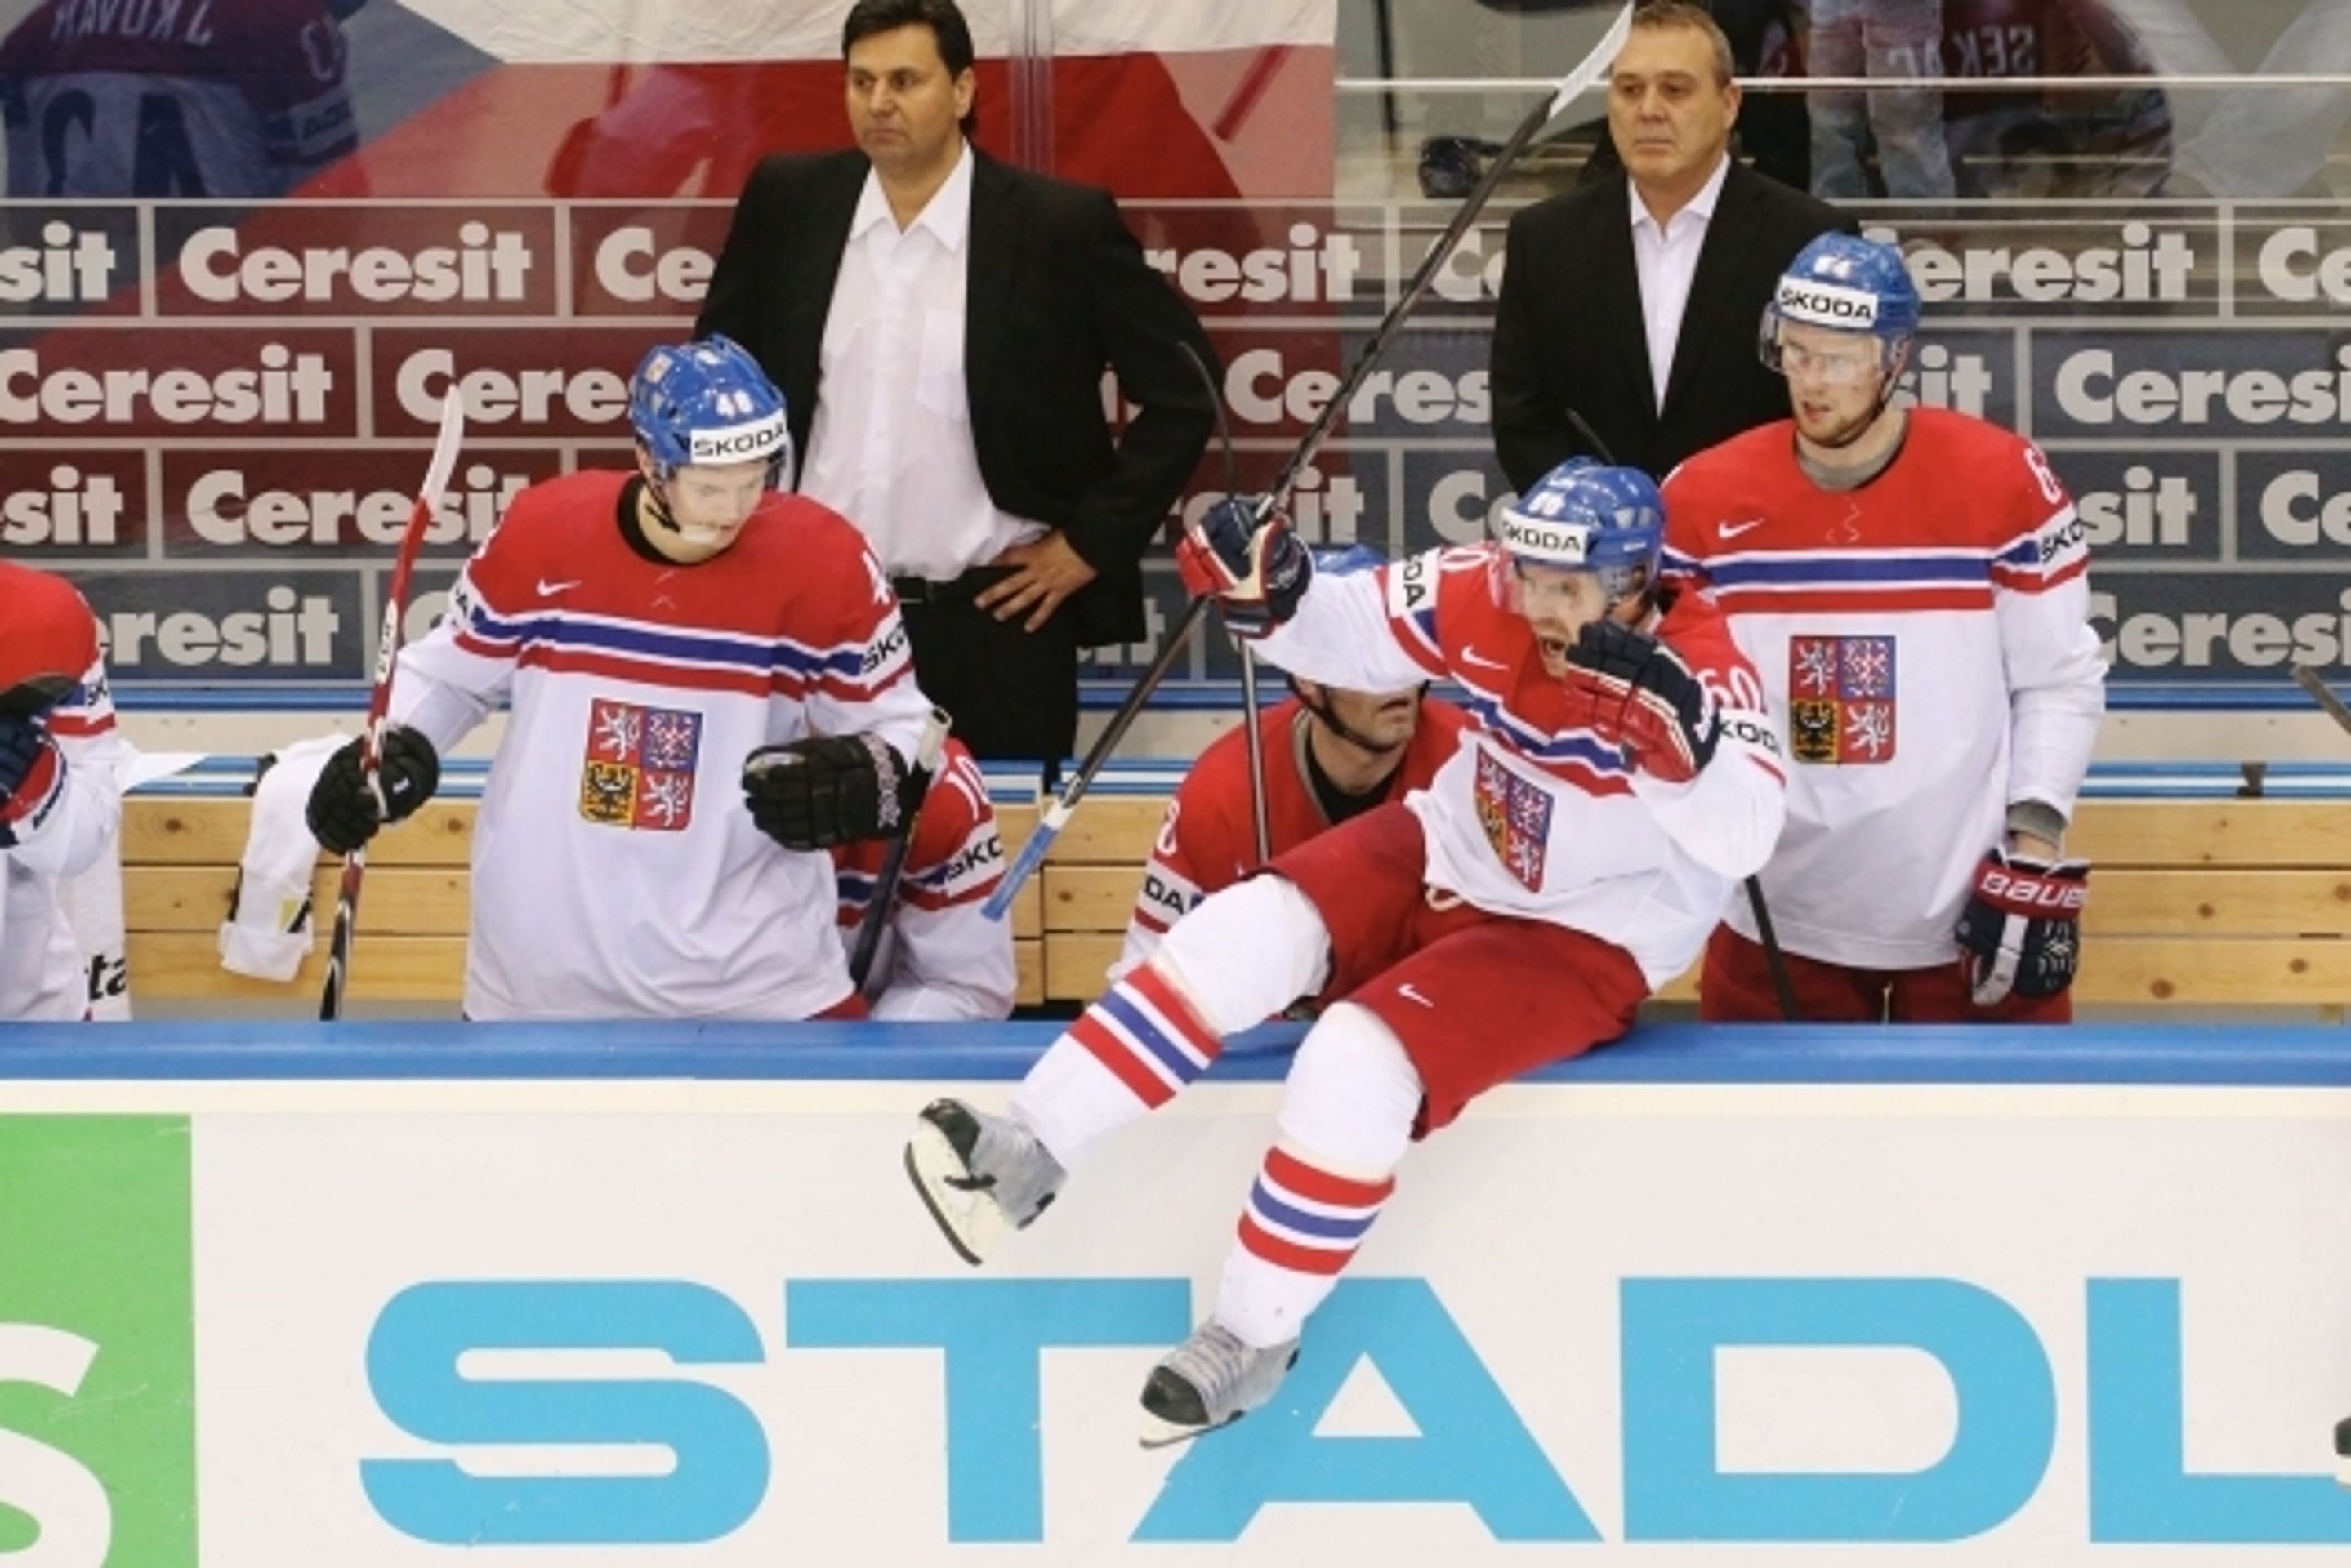 Česká hokejová reprezentace na MS 2014 - 4 - GALERIE: Česká hokejová reprezentace na MS 2014 (4/7)